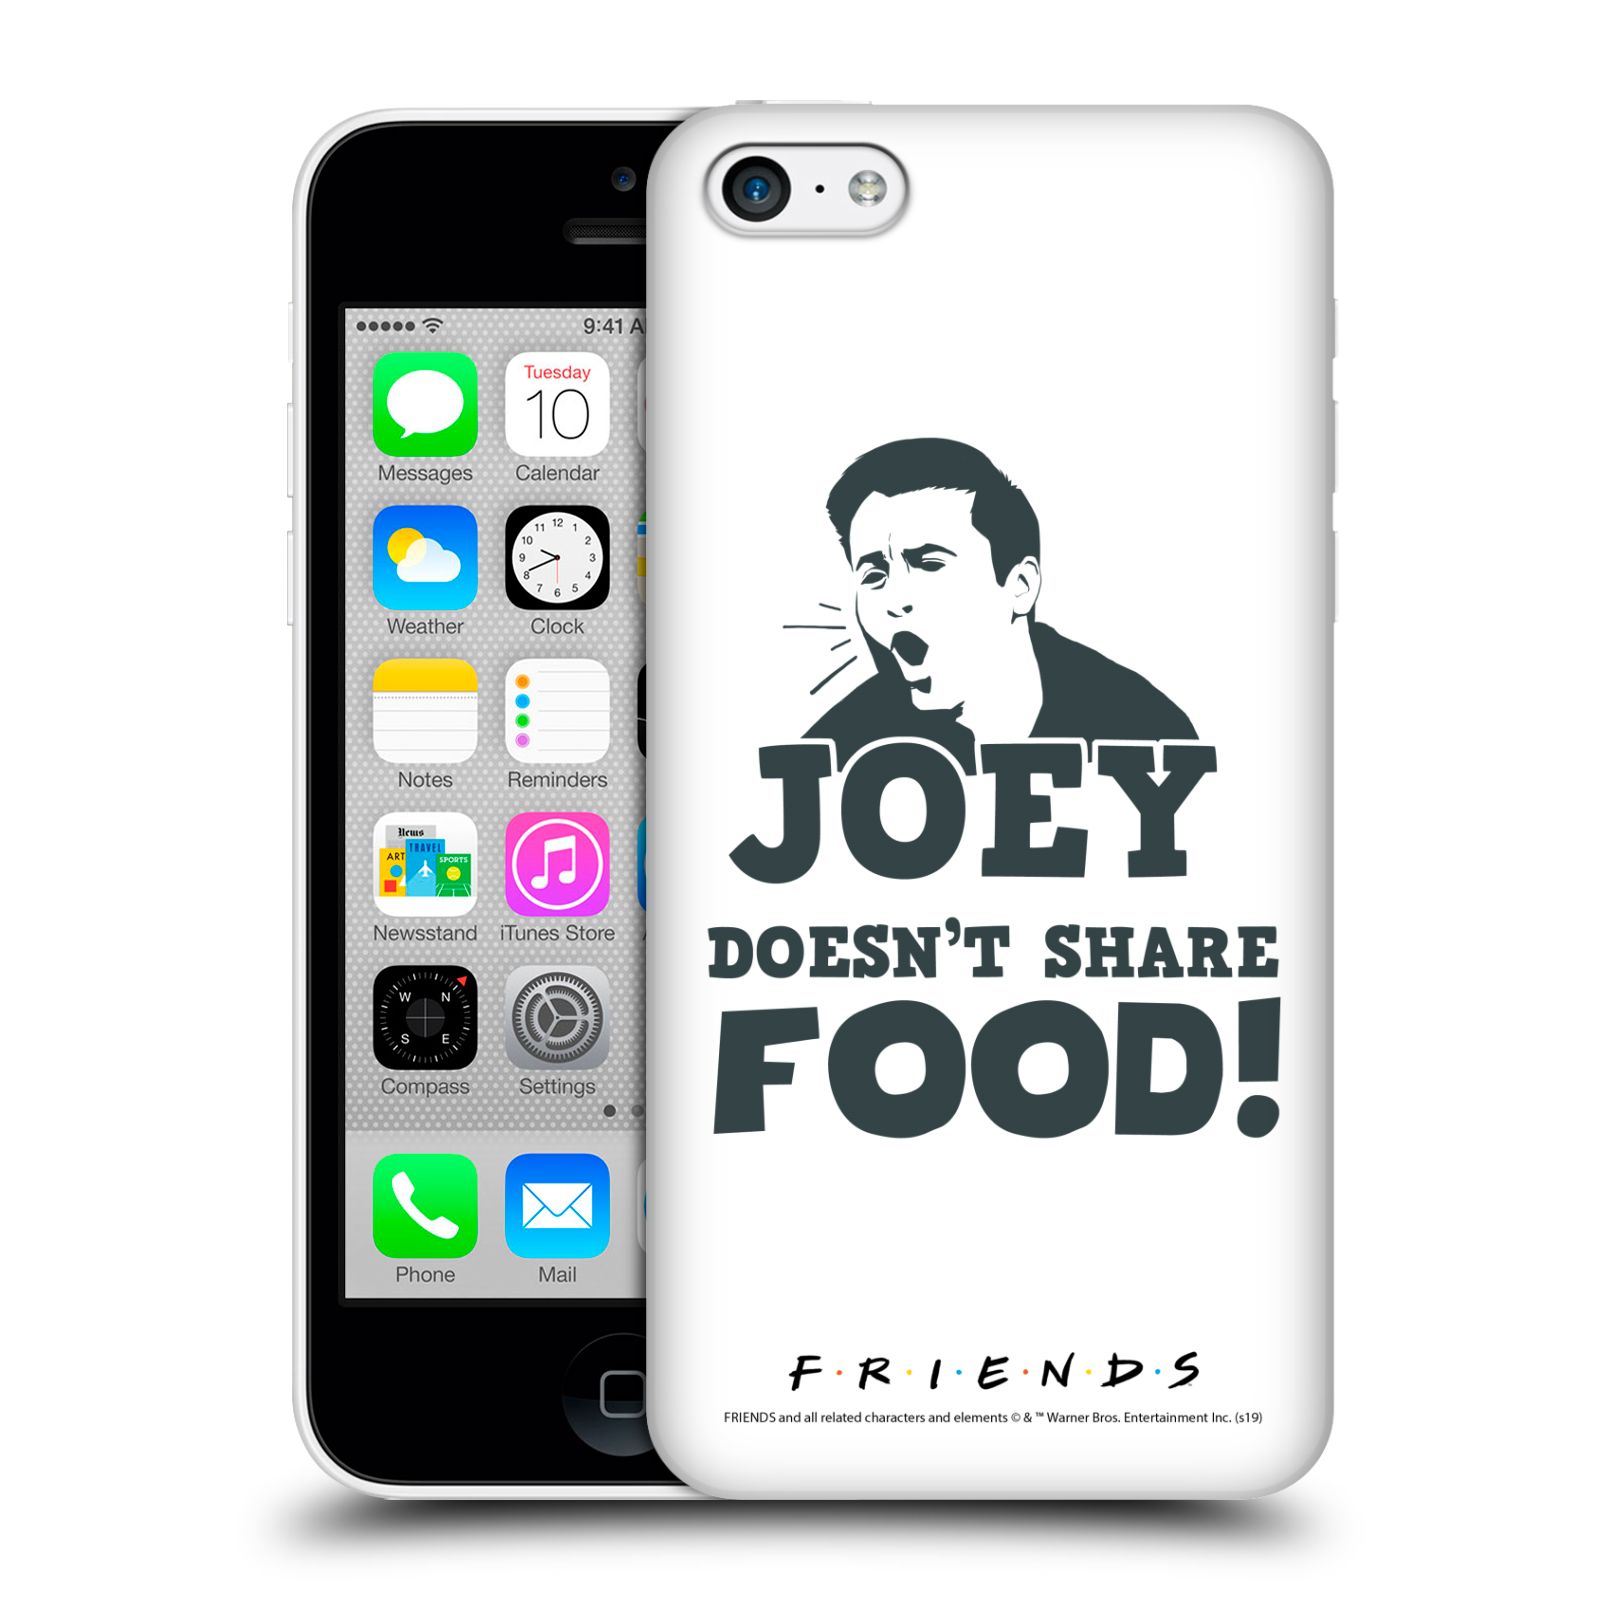 Pouzdro na mobil Apple Iphone 5C - HEAD CASE - Seriál Přátelé - Joey se o jídlo nedělí